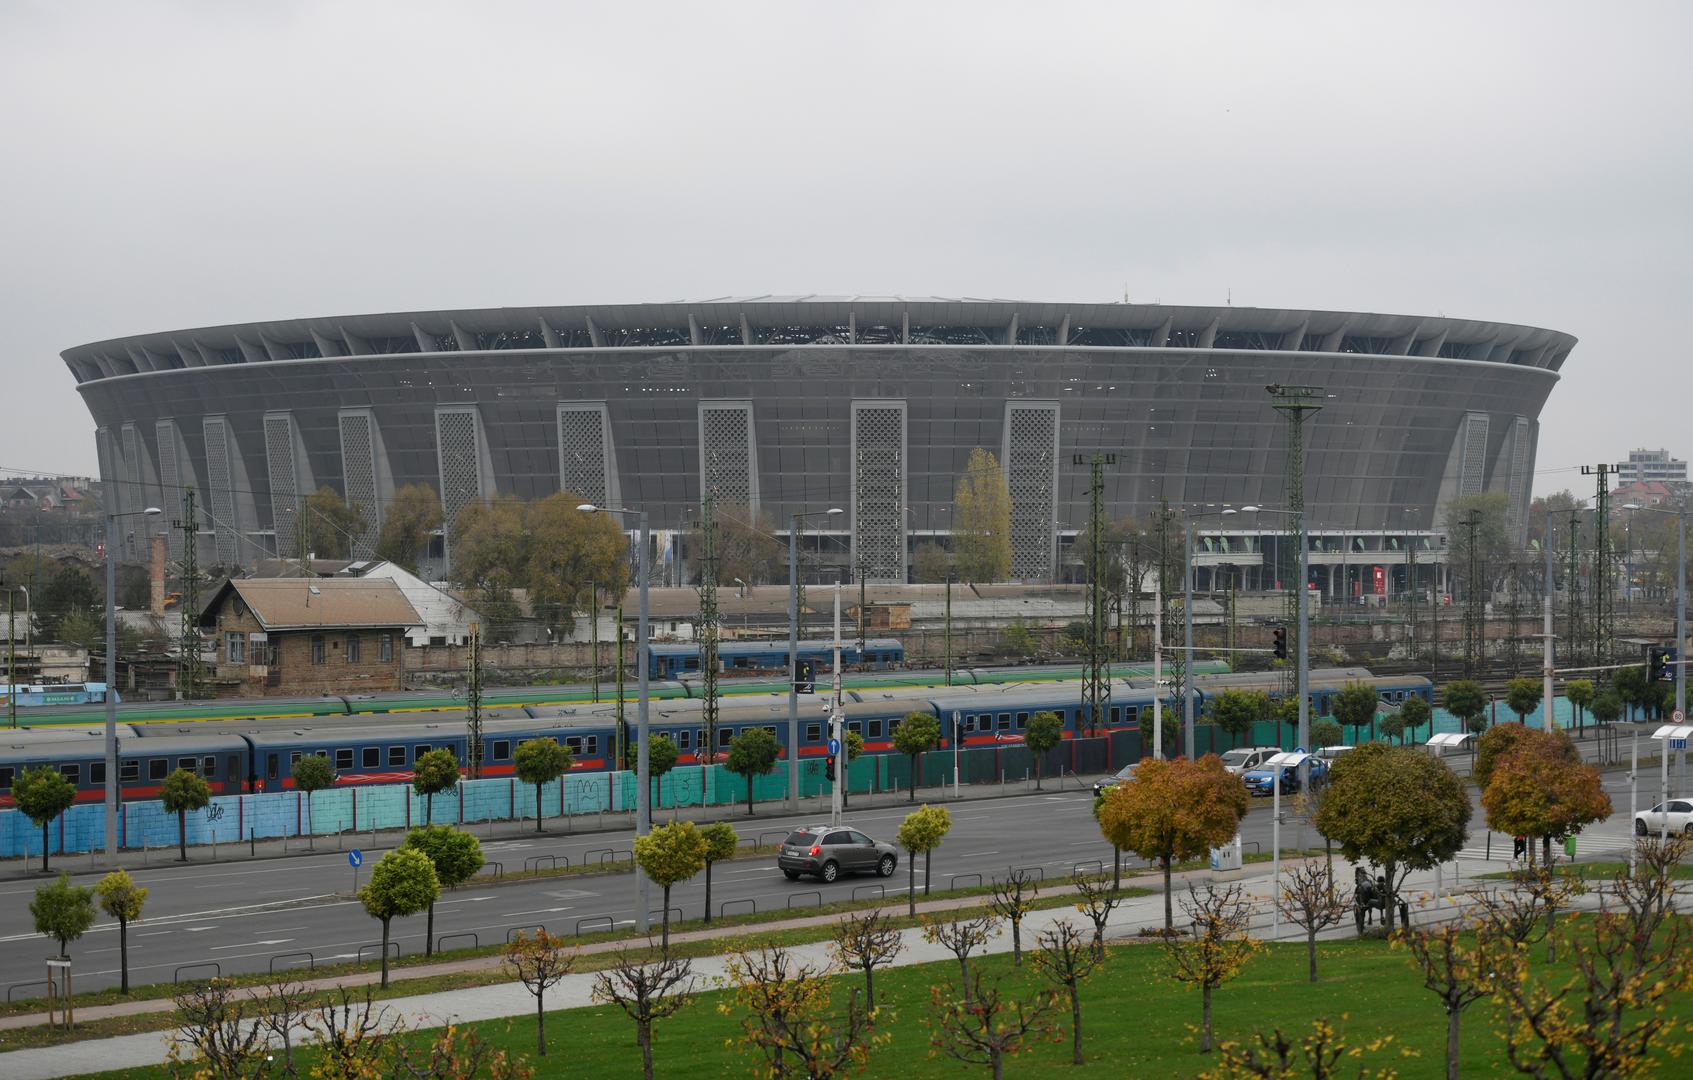 Izgradnja stadiona koja je počela 2017. godine koštala je 620 milijuna eura